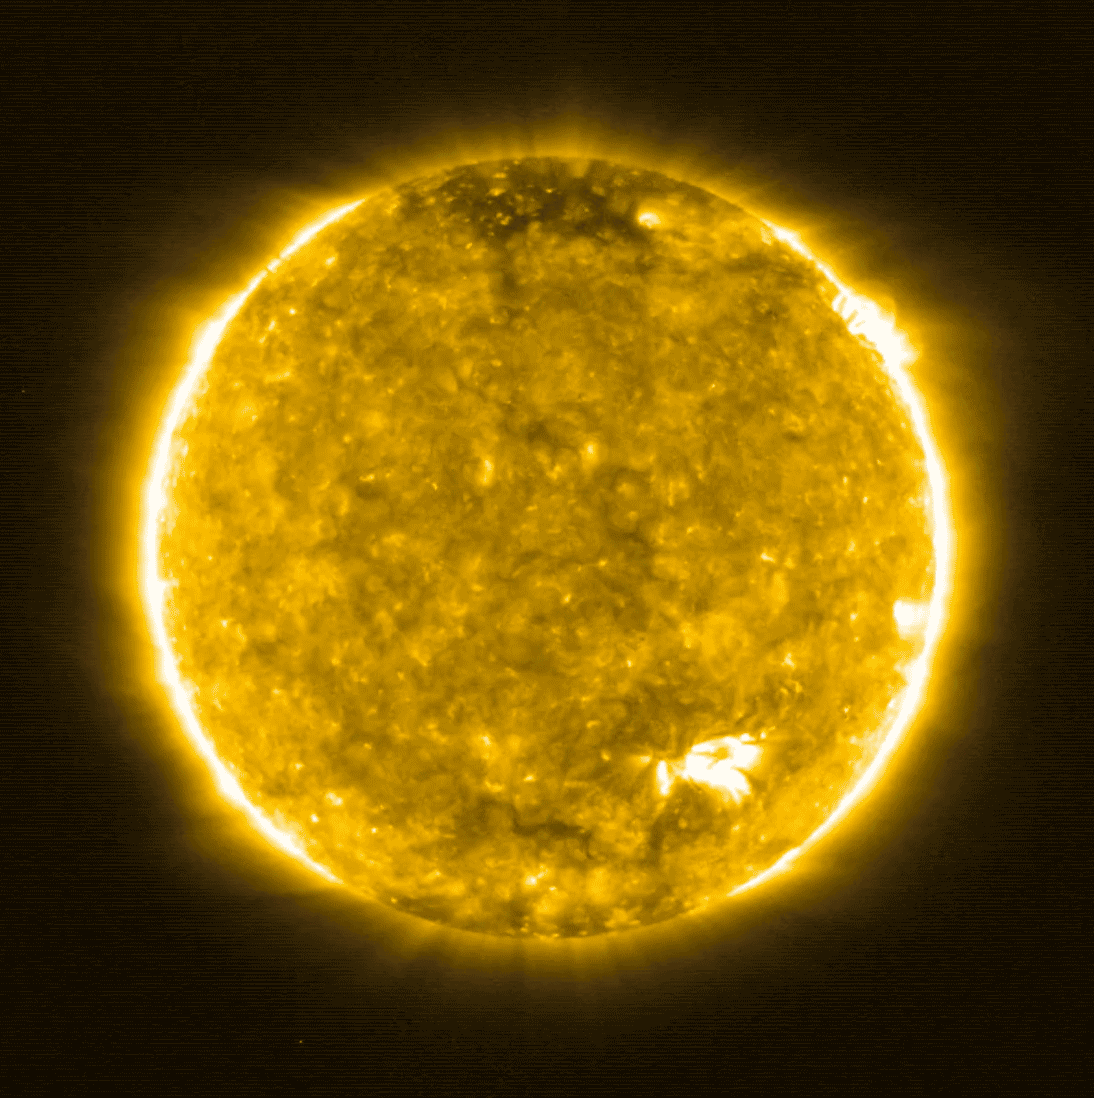 Imagens capturadas pela sonda Solar Orbiter, a 77 milhões de quilômetros do Sol (Foto: Reprodução/Nasa)